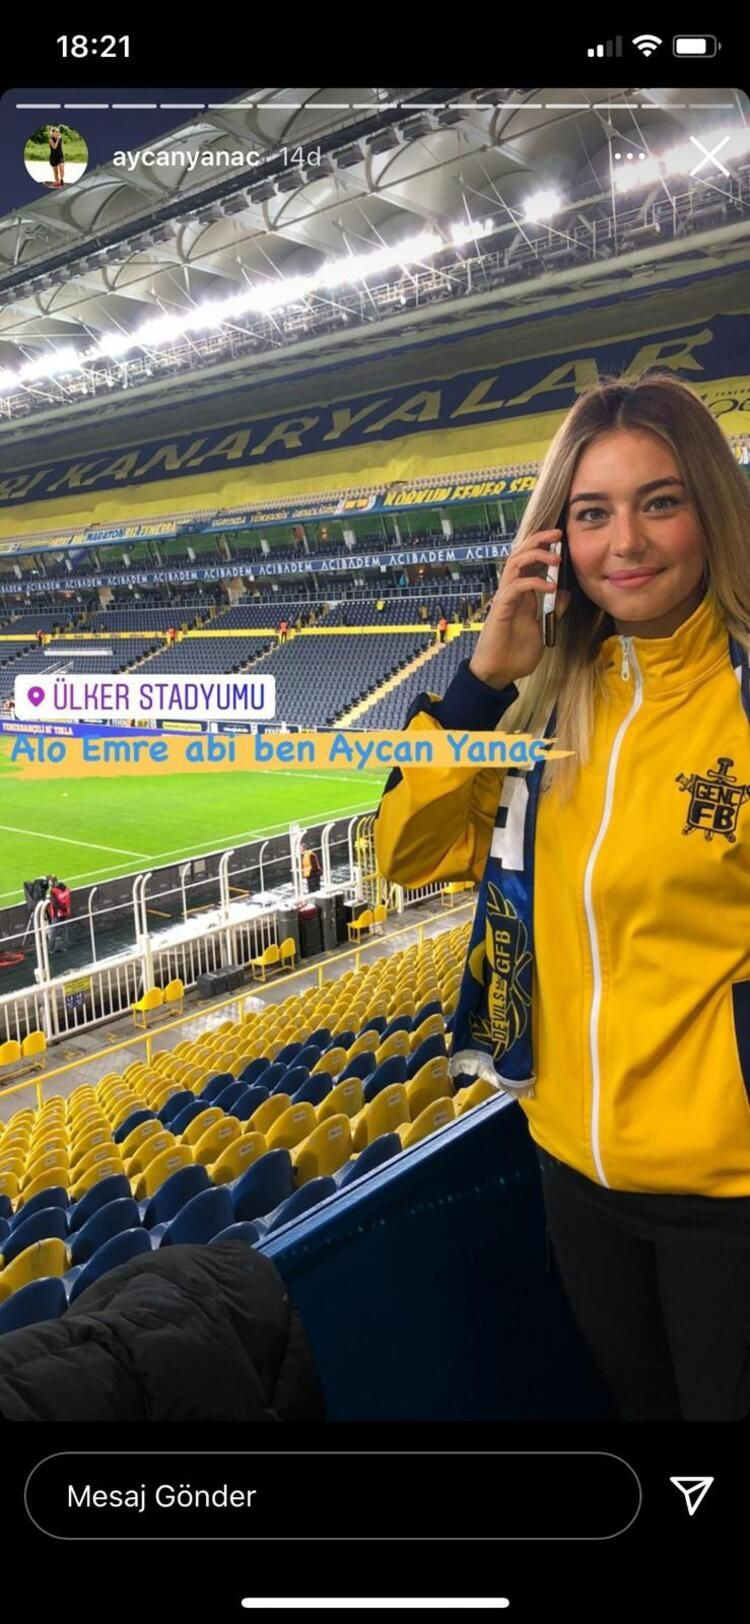 Aycan Yanaç'tan Fenerbahçe'ye çağrı! "Telefonun başında bekliyorum" dedi ve hayalini açıkladı... - Sayfa 2